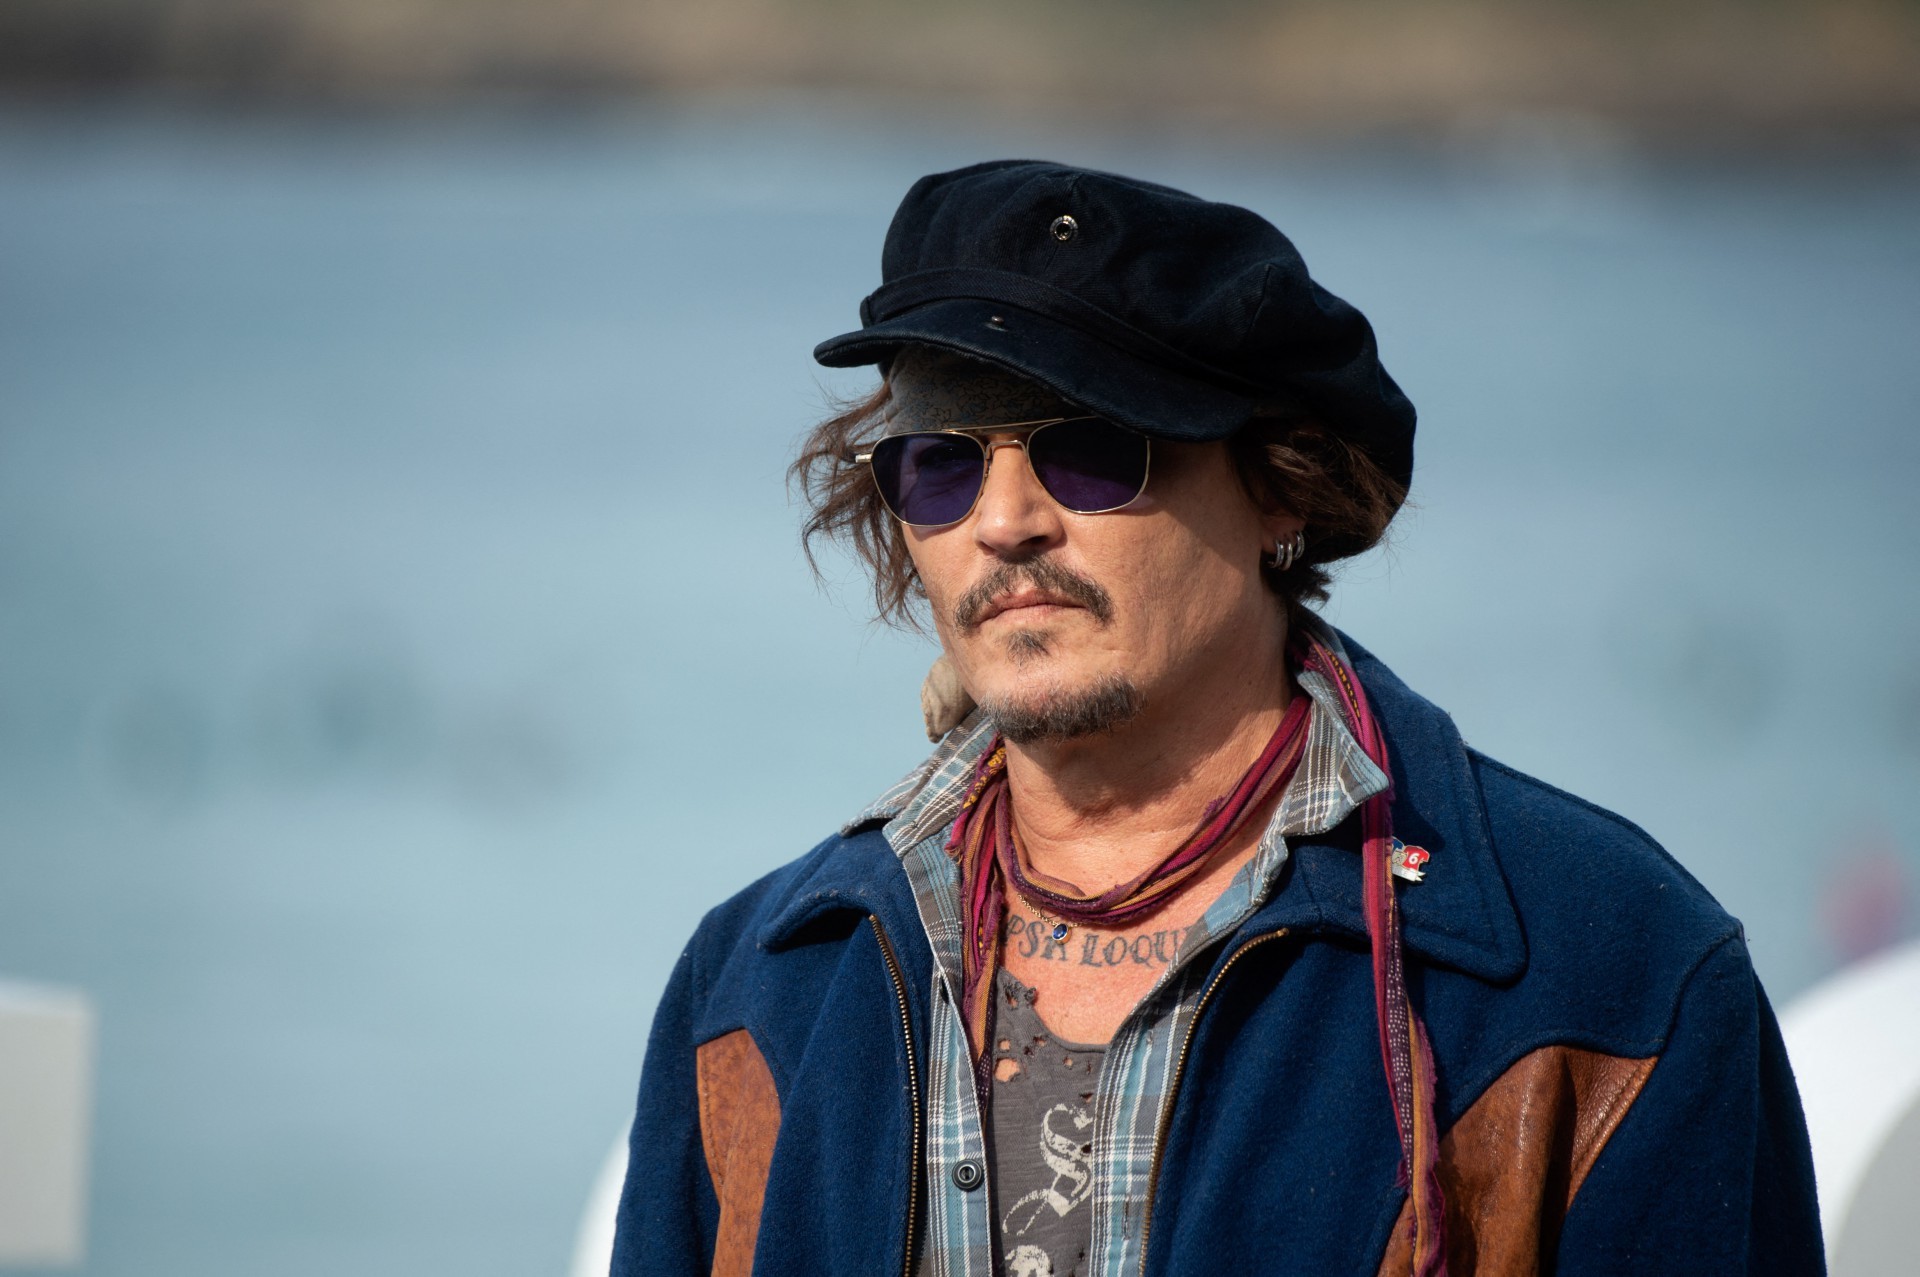 Ator Johnny Depp é encontrado inconsciente em hotel (Foto: ANDER GILLENEA / AFP)